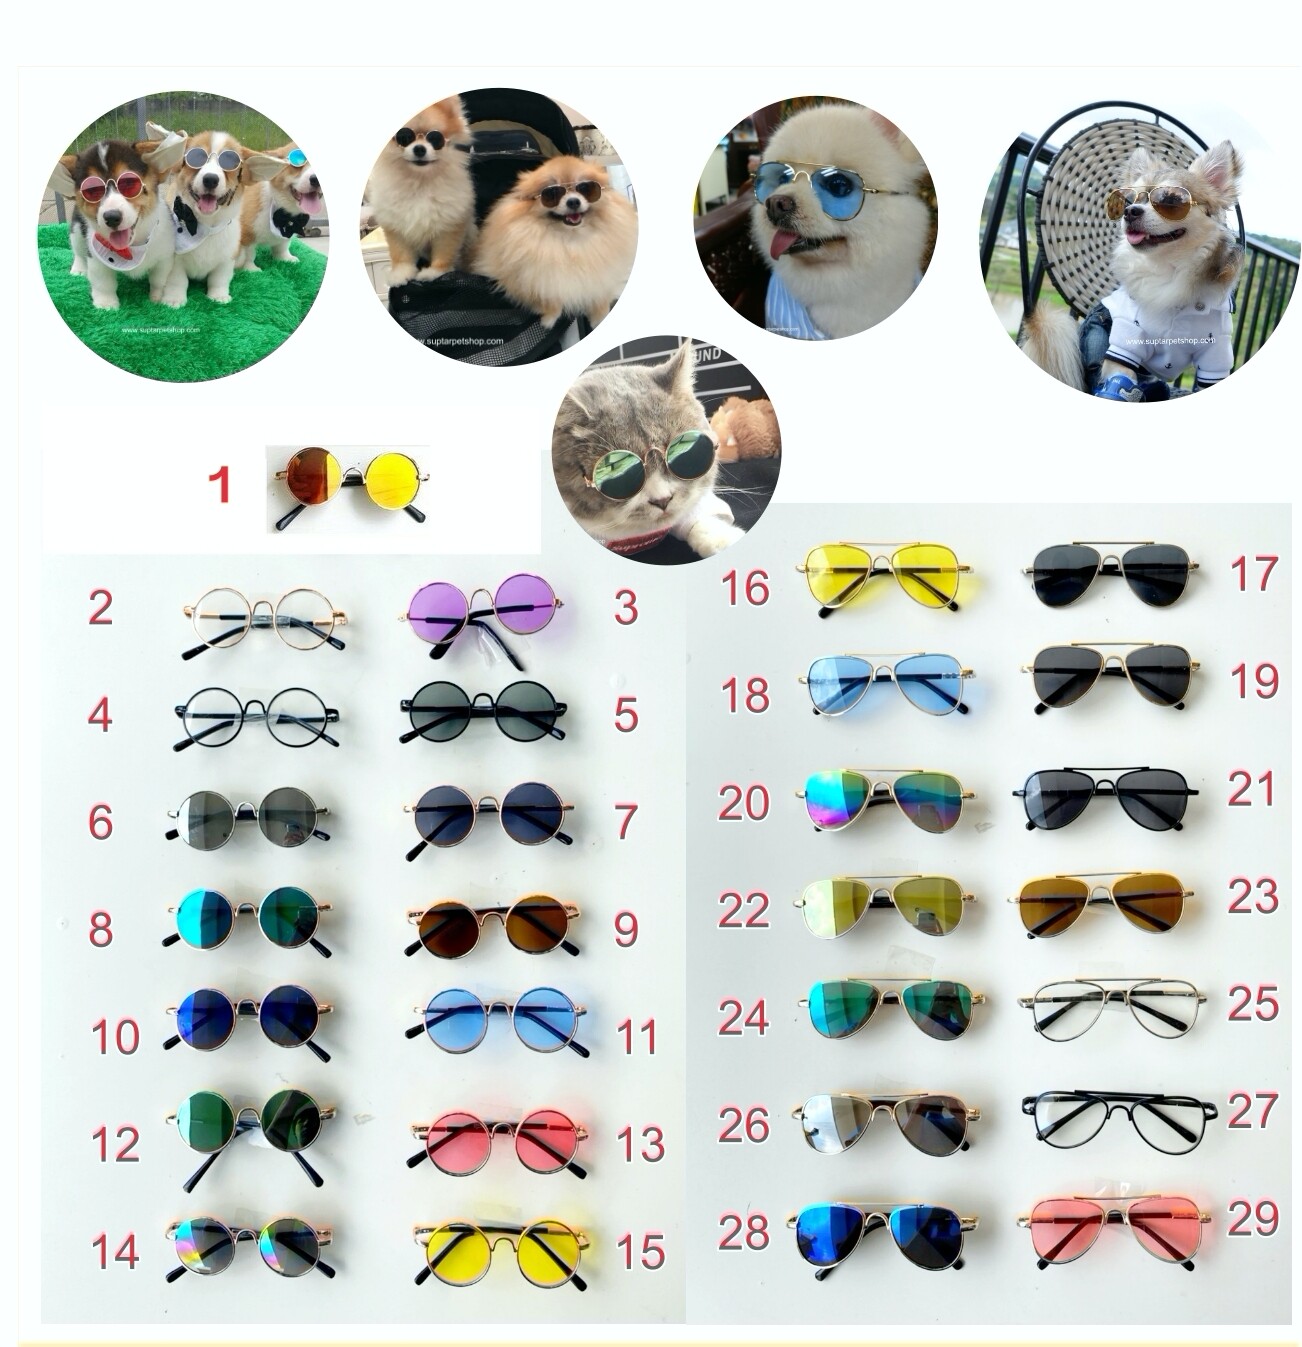 *มีสายรัด* แว่นตาสุนัข แว่นตาหมา แว่นตาแมว แว่นตา ทรงกลม และ ทรง Aviator  แว่นตาสำหรับสัตว์เลี้ยง แว่นหมา แว่นแมว ขนาดกว้าง 8-9 cm